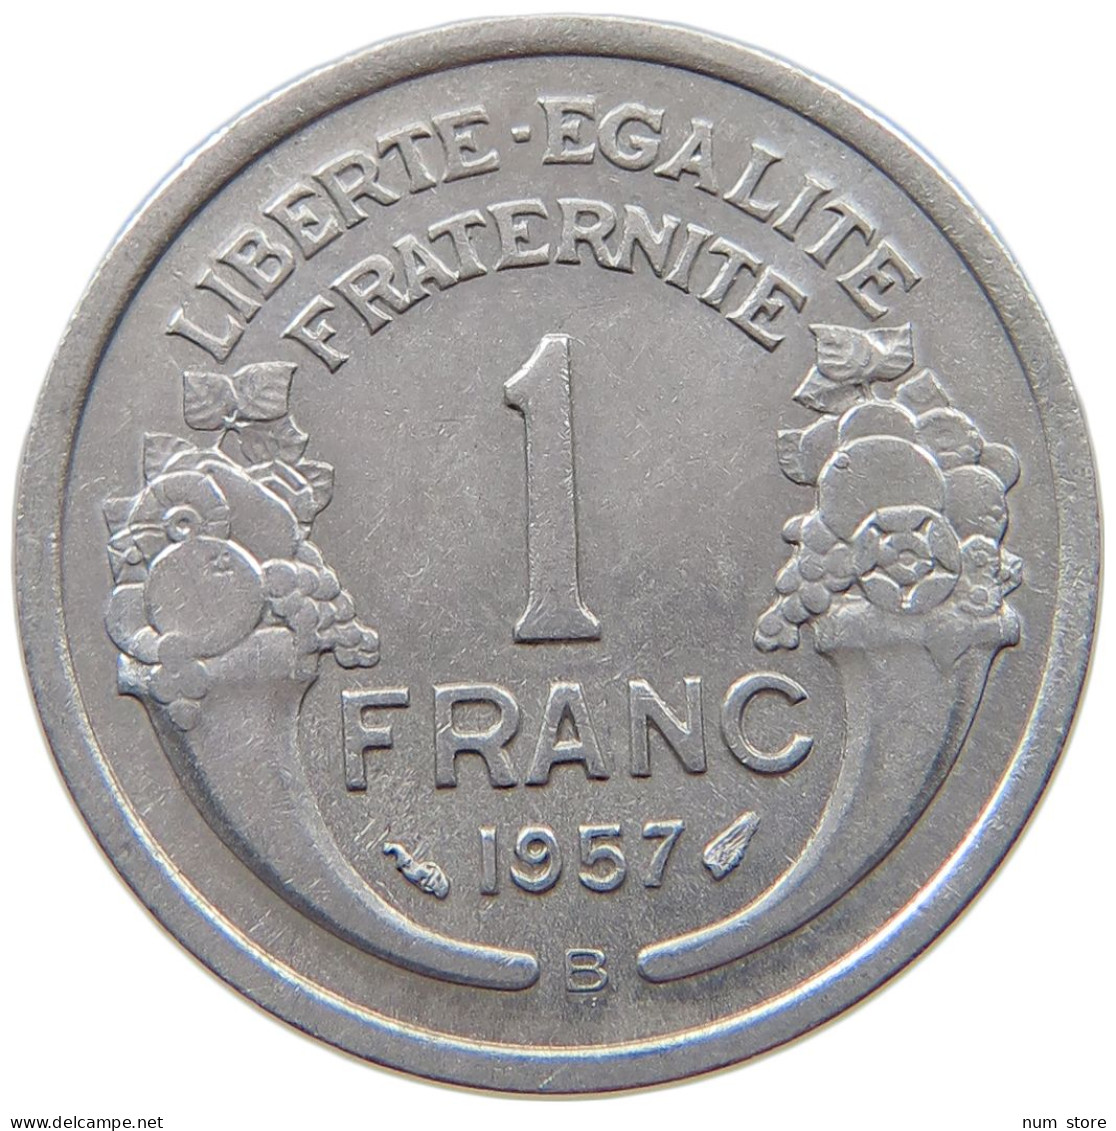 FRANCE 1 FRANC 1957 B #s069 0245 - 1 Franc